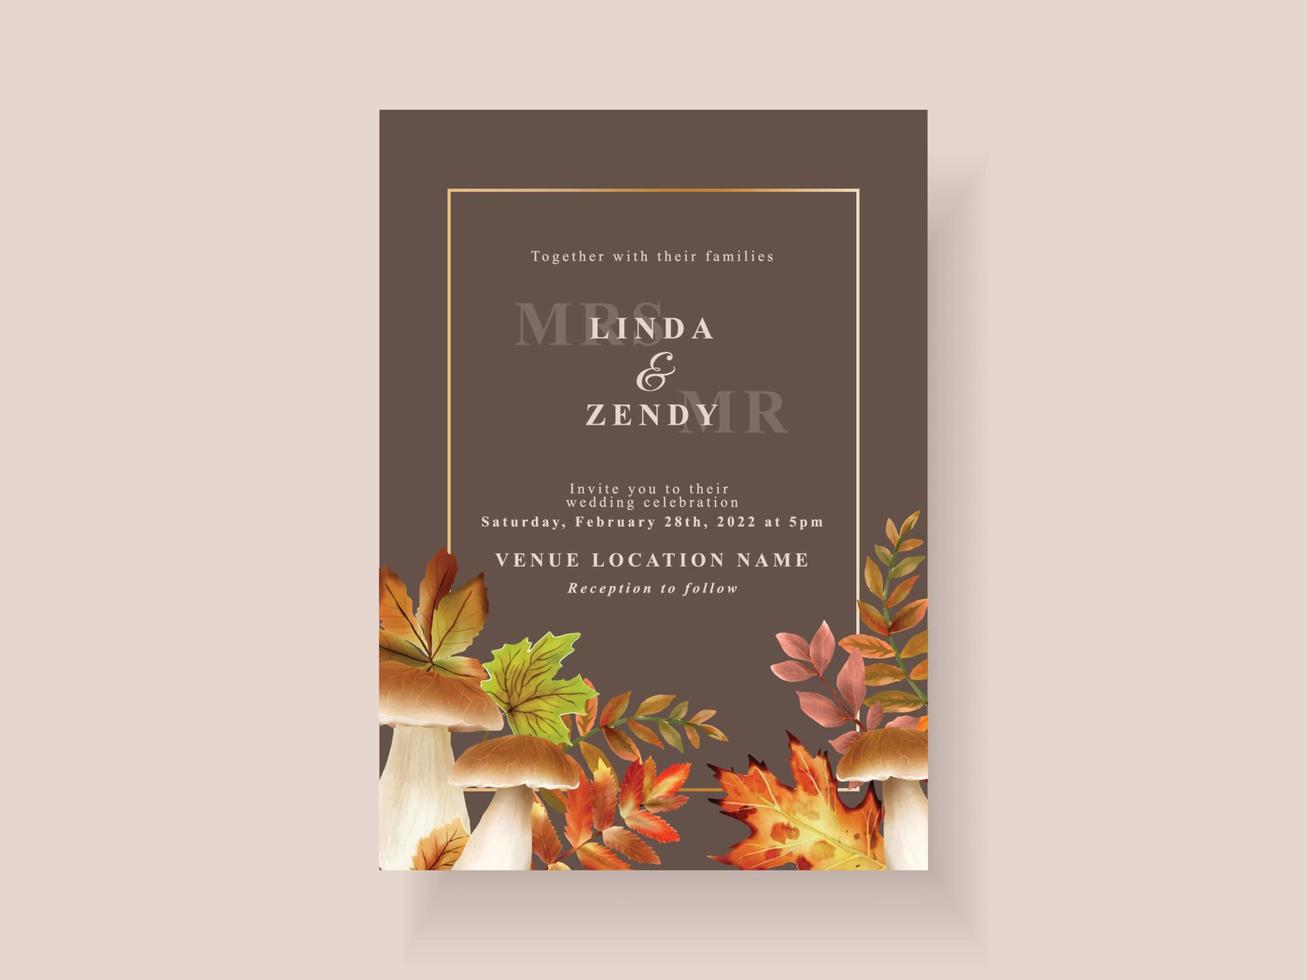 cartão de convite de casamento com tema de temporada de outono vetor